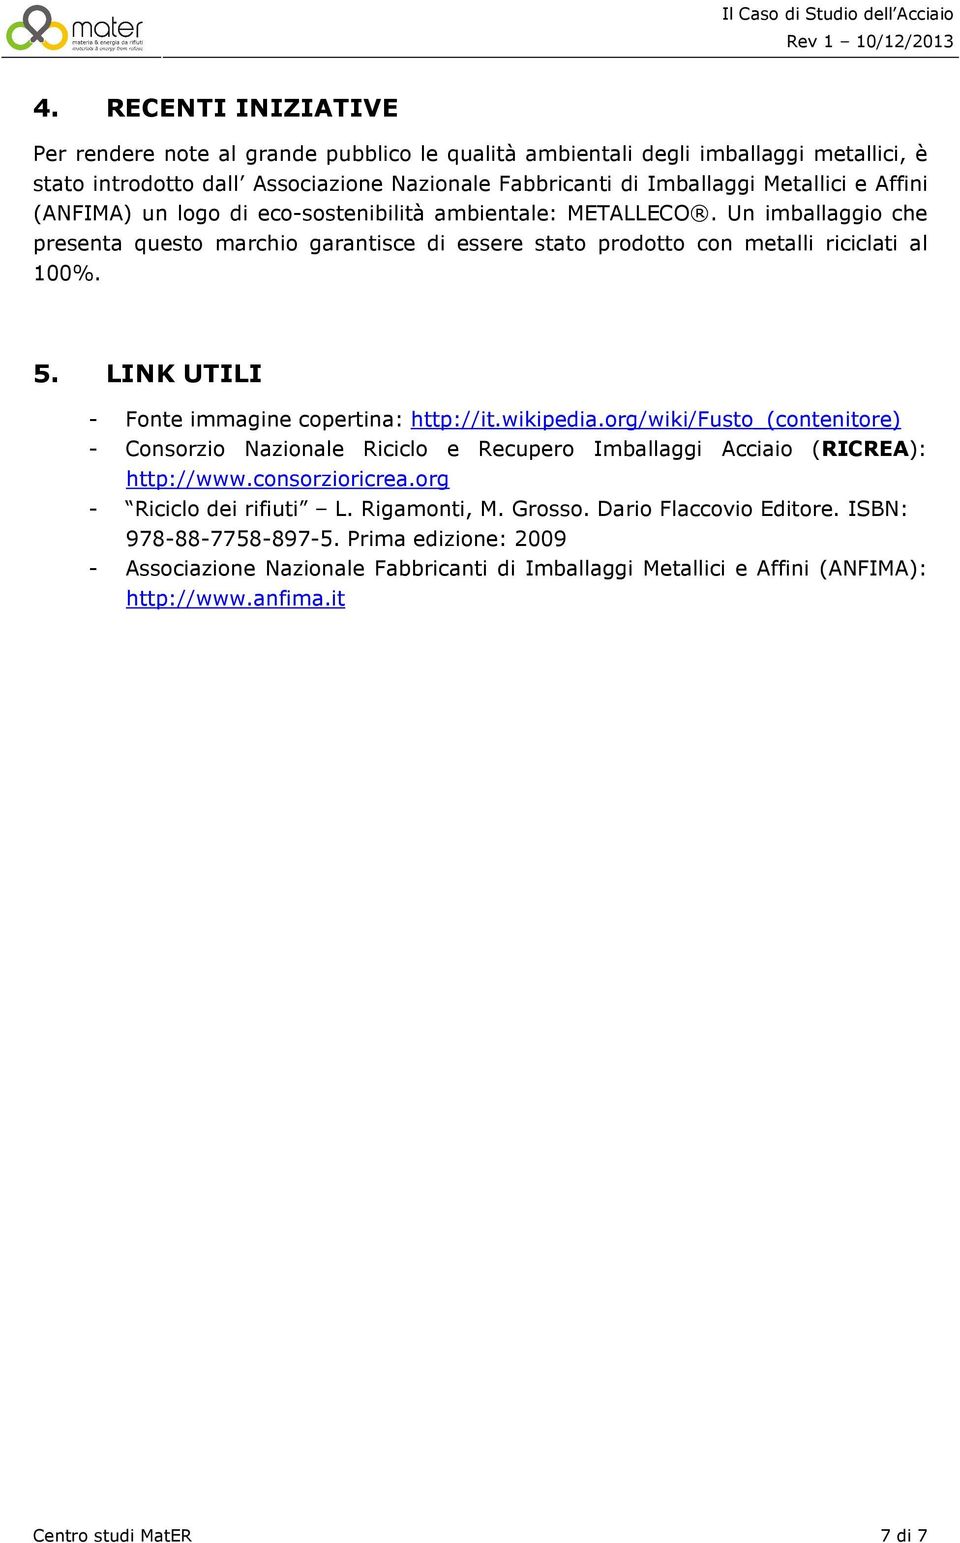 LINK UTILI - Fonte immagine copertina: http://it.wikipedia.org/wiki/fusto_(contenitore) - Consorzio Nazionale Riciclo e Recupero Imballaggi Acciaio (RICREA): http://www.consorzioricrea.